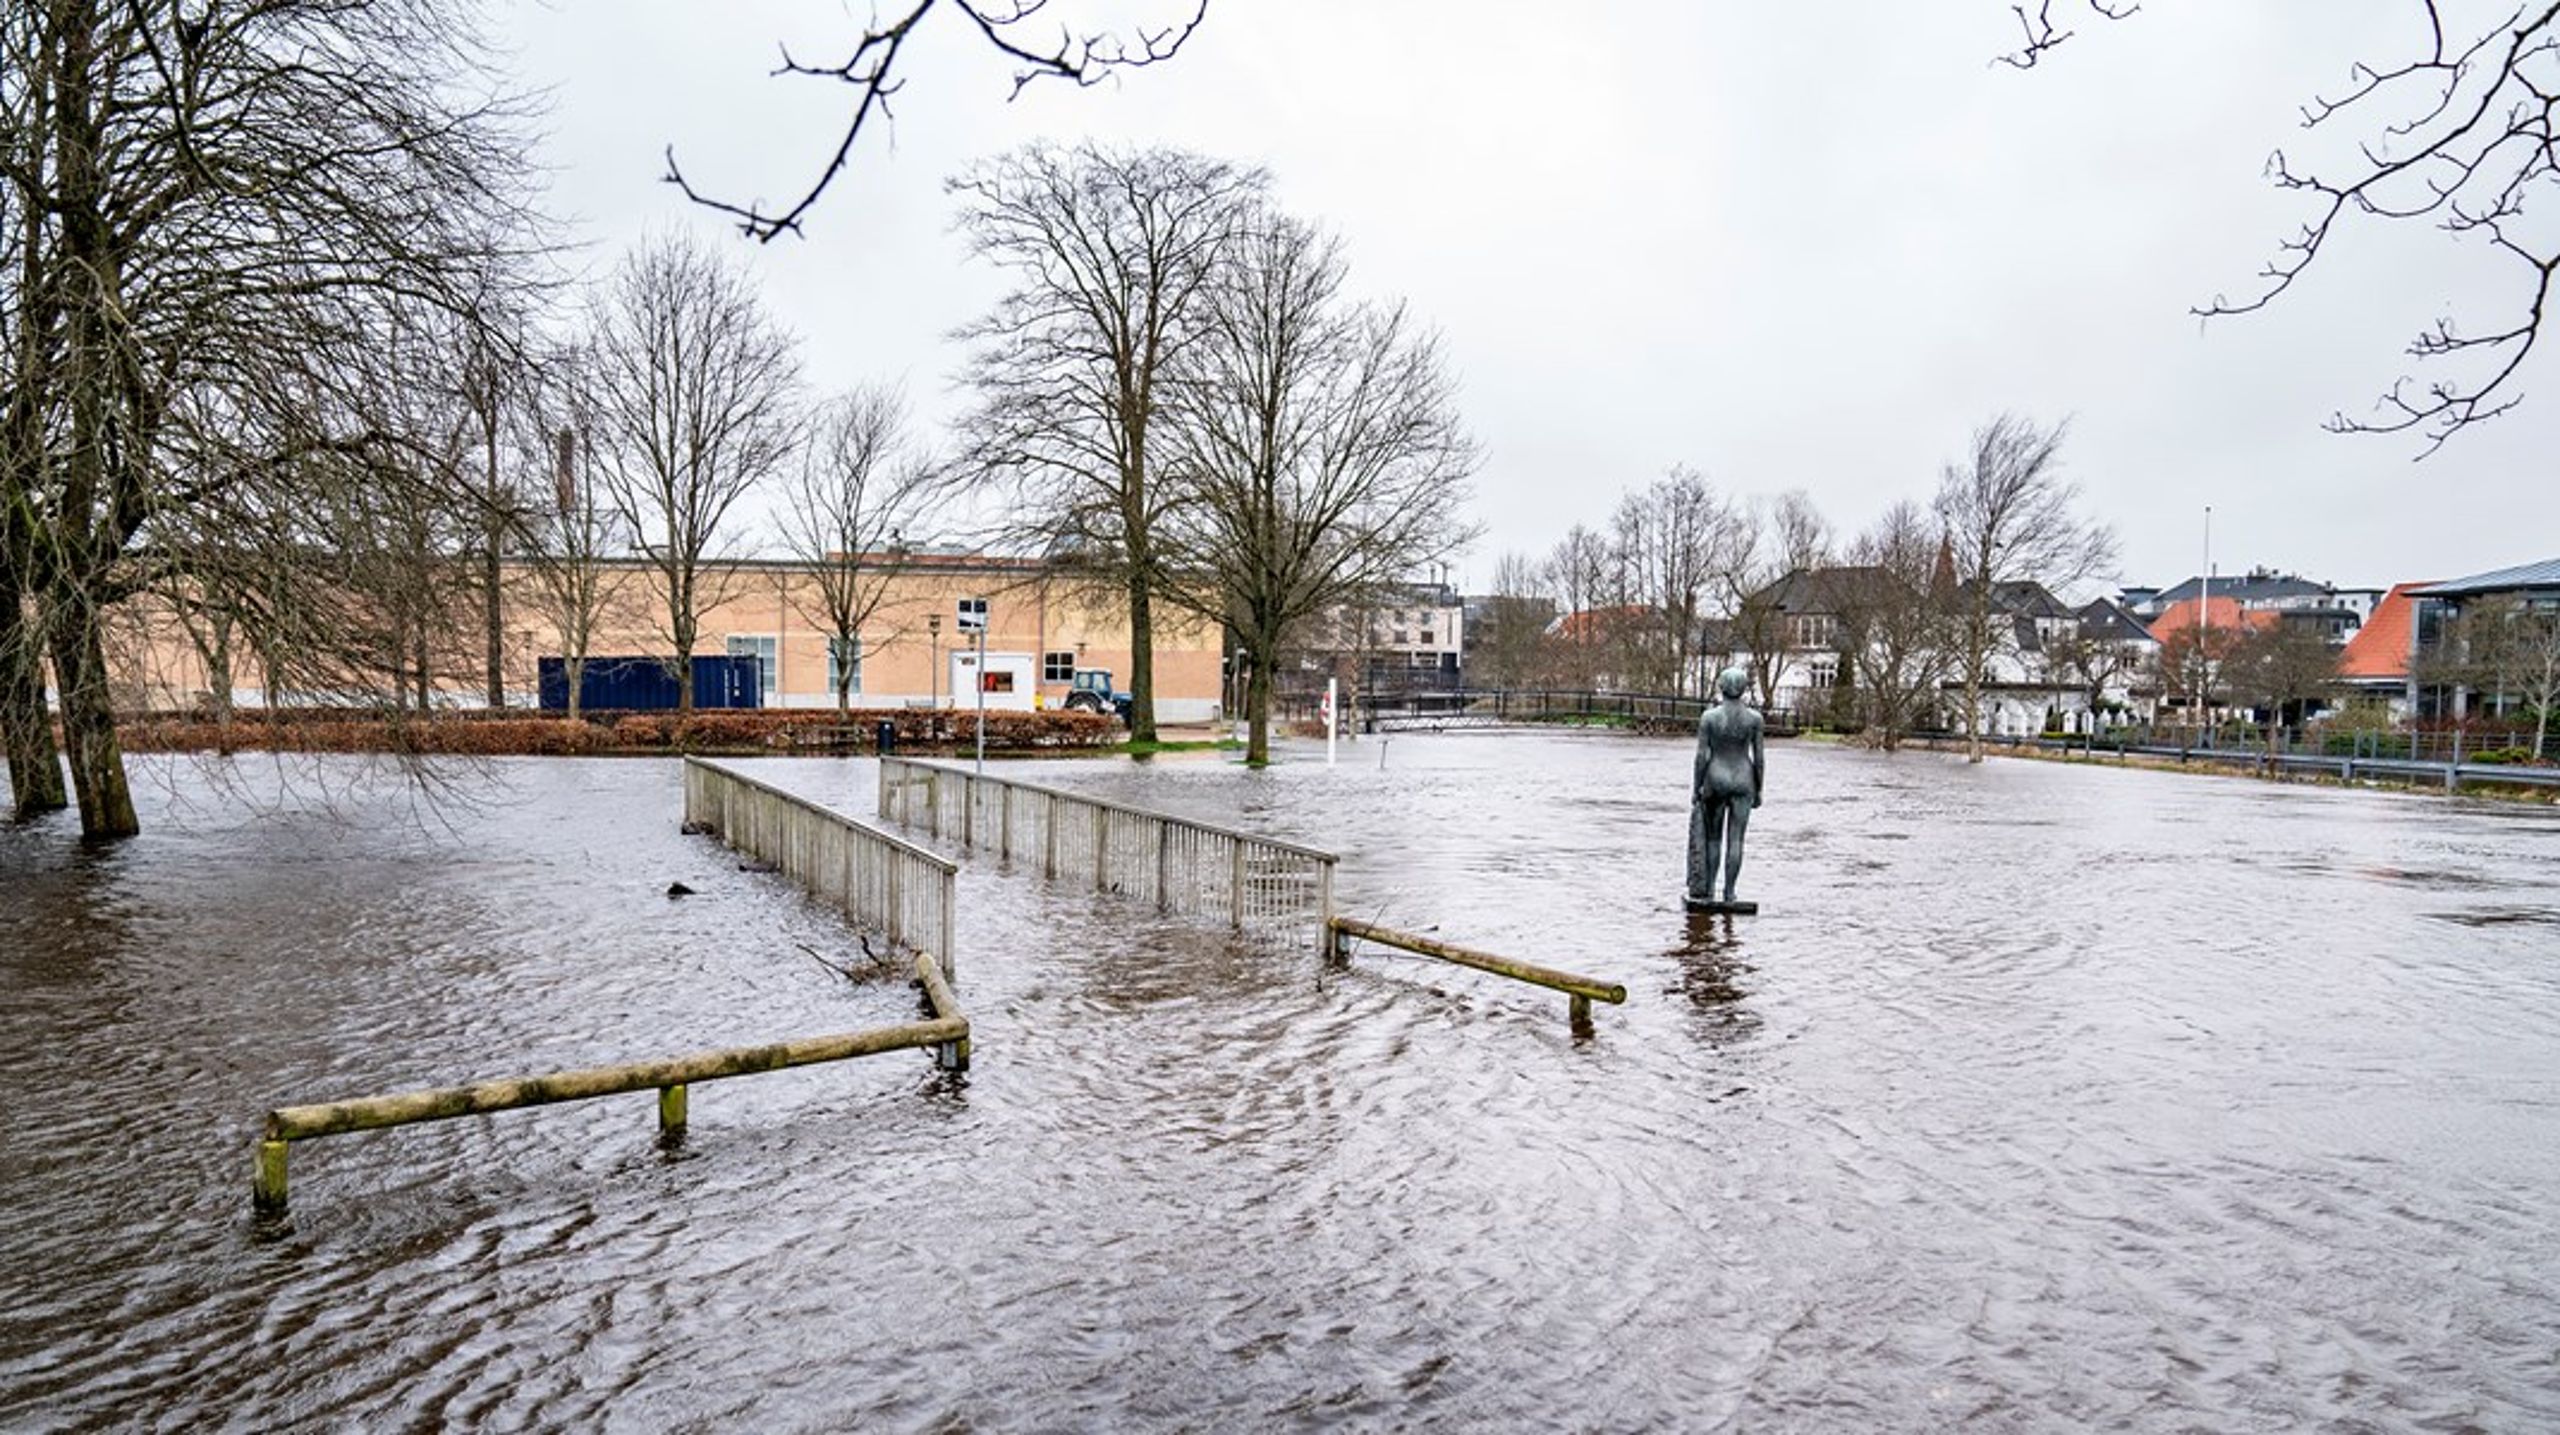 Lokal afledning af regnvand, indsatser overfor uvedkommende vand i kloakker og neddrosling af grundvandsindvinding har givet os et problem med højtstående grundvand i Danmark, og det problem forstærkes i de kommende år som følge af global opvarmning, skriver Hans Jørgen Henriksen.